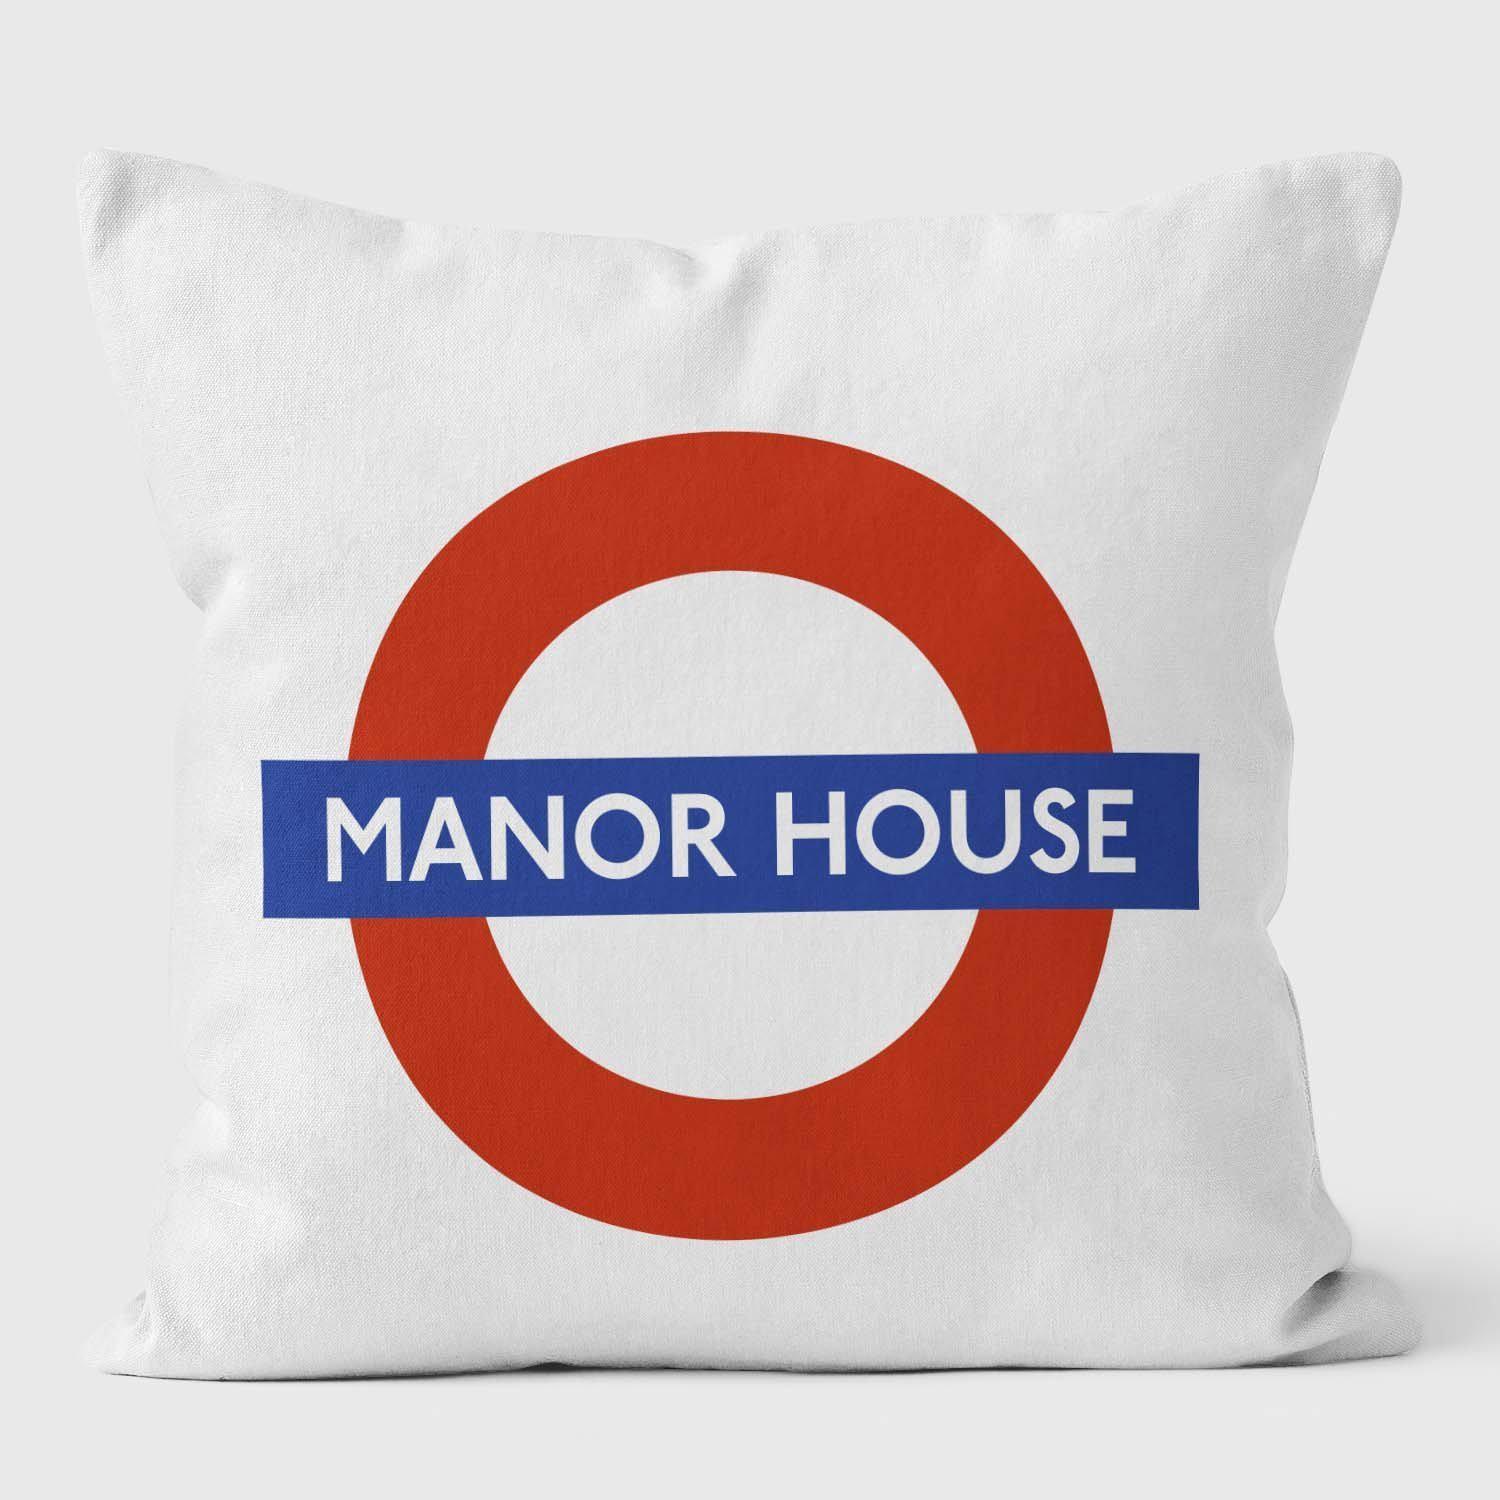 Manor House London Underground Tube Station Roundel Cushion - Handmade Cushions UK - WeLoveCushions